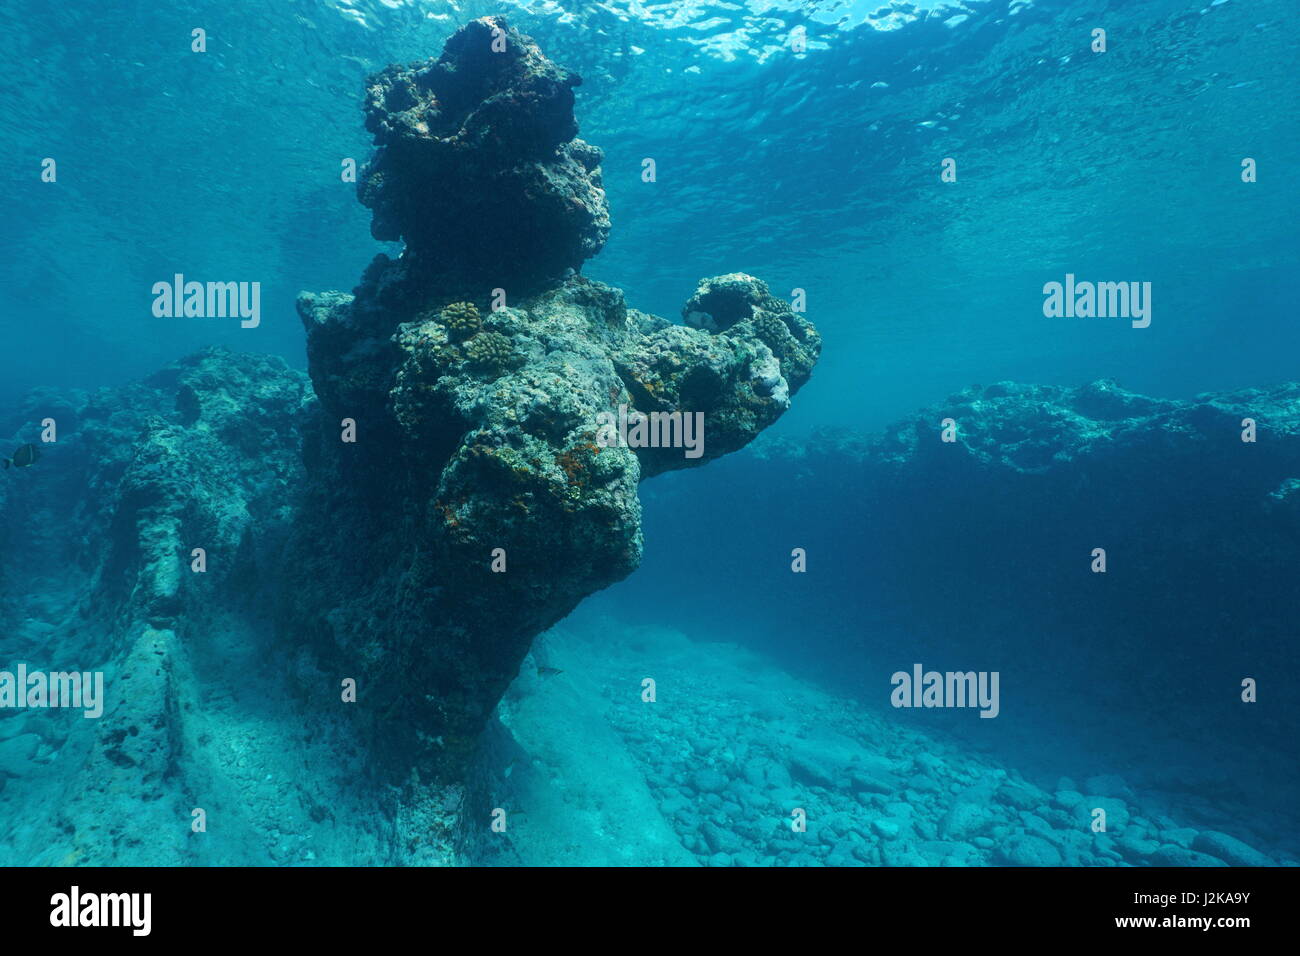 Oceano Pacifico formazione rocciosa naturale underwater scolpite dalle onde nella barriera corallina esterna di Huahine isola, Polinesia Francese Foto Stock